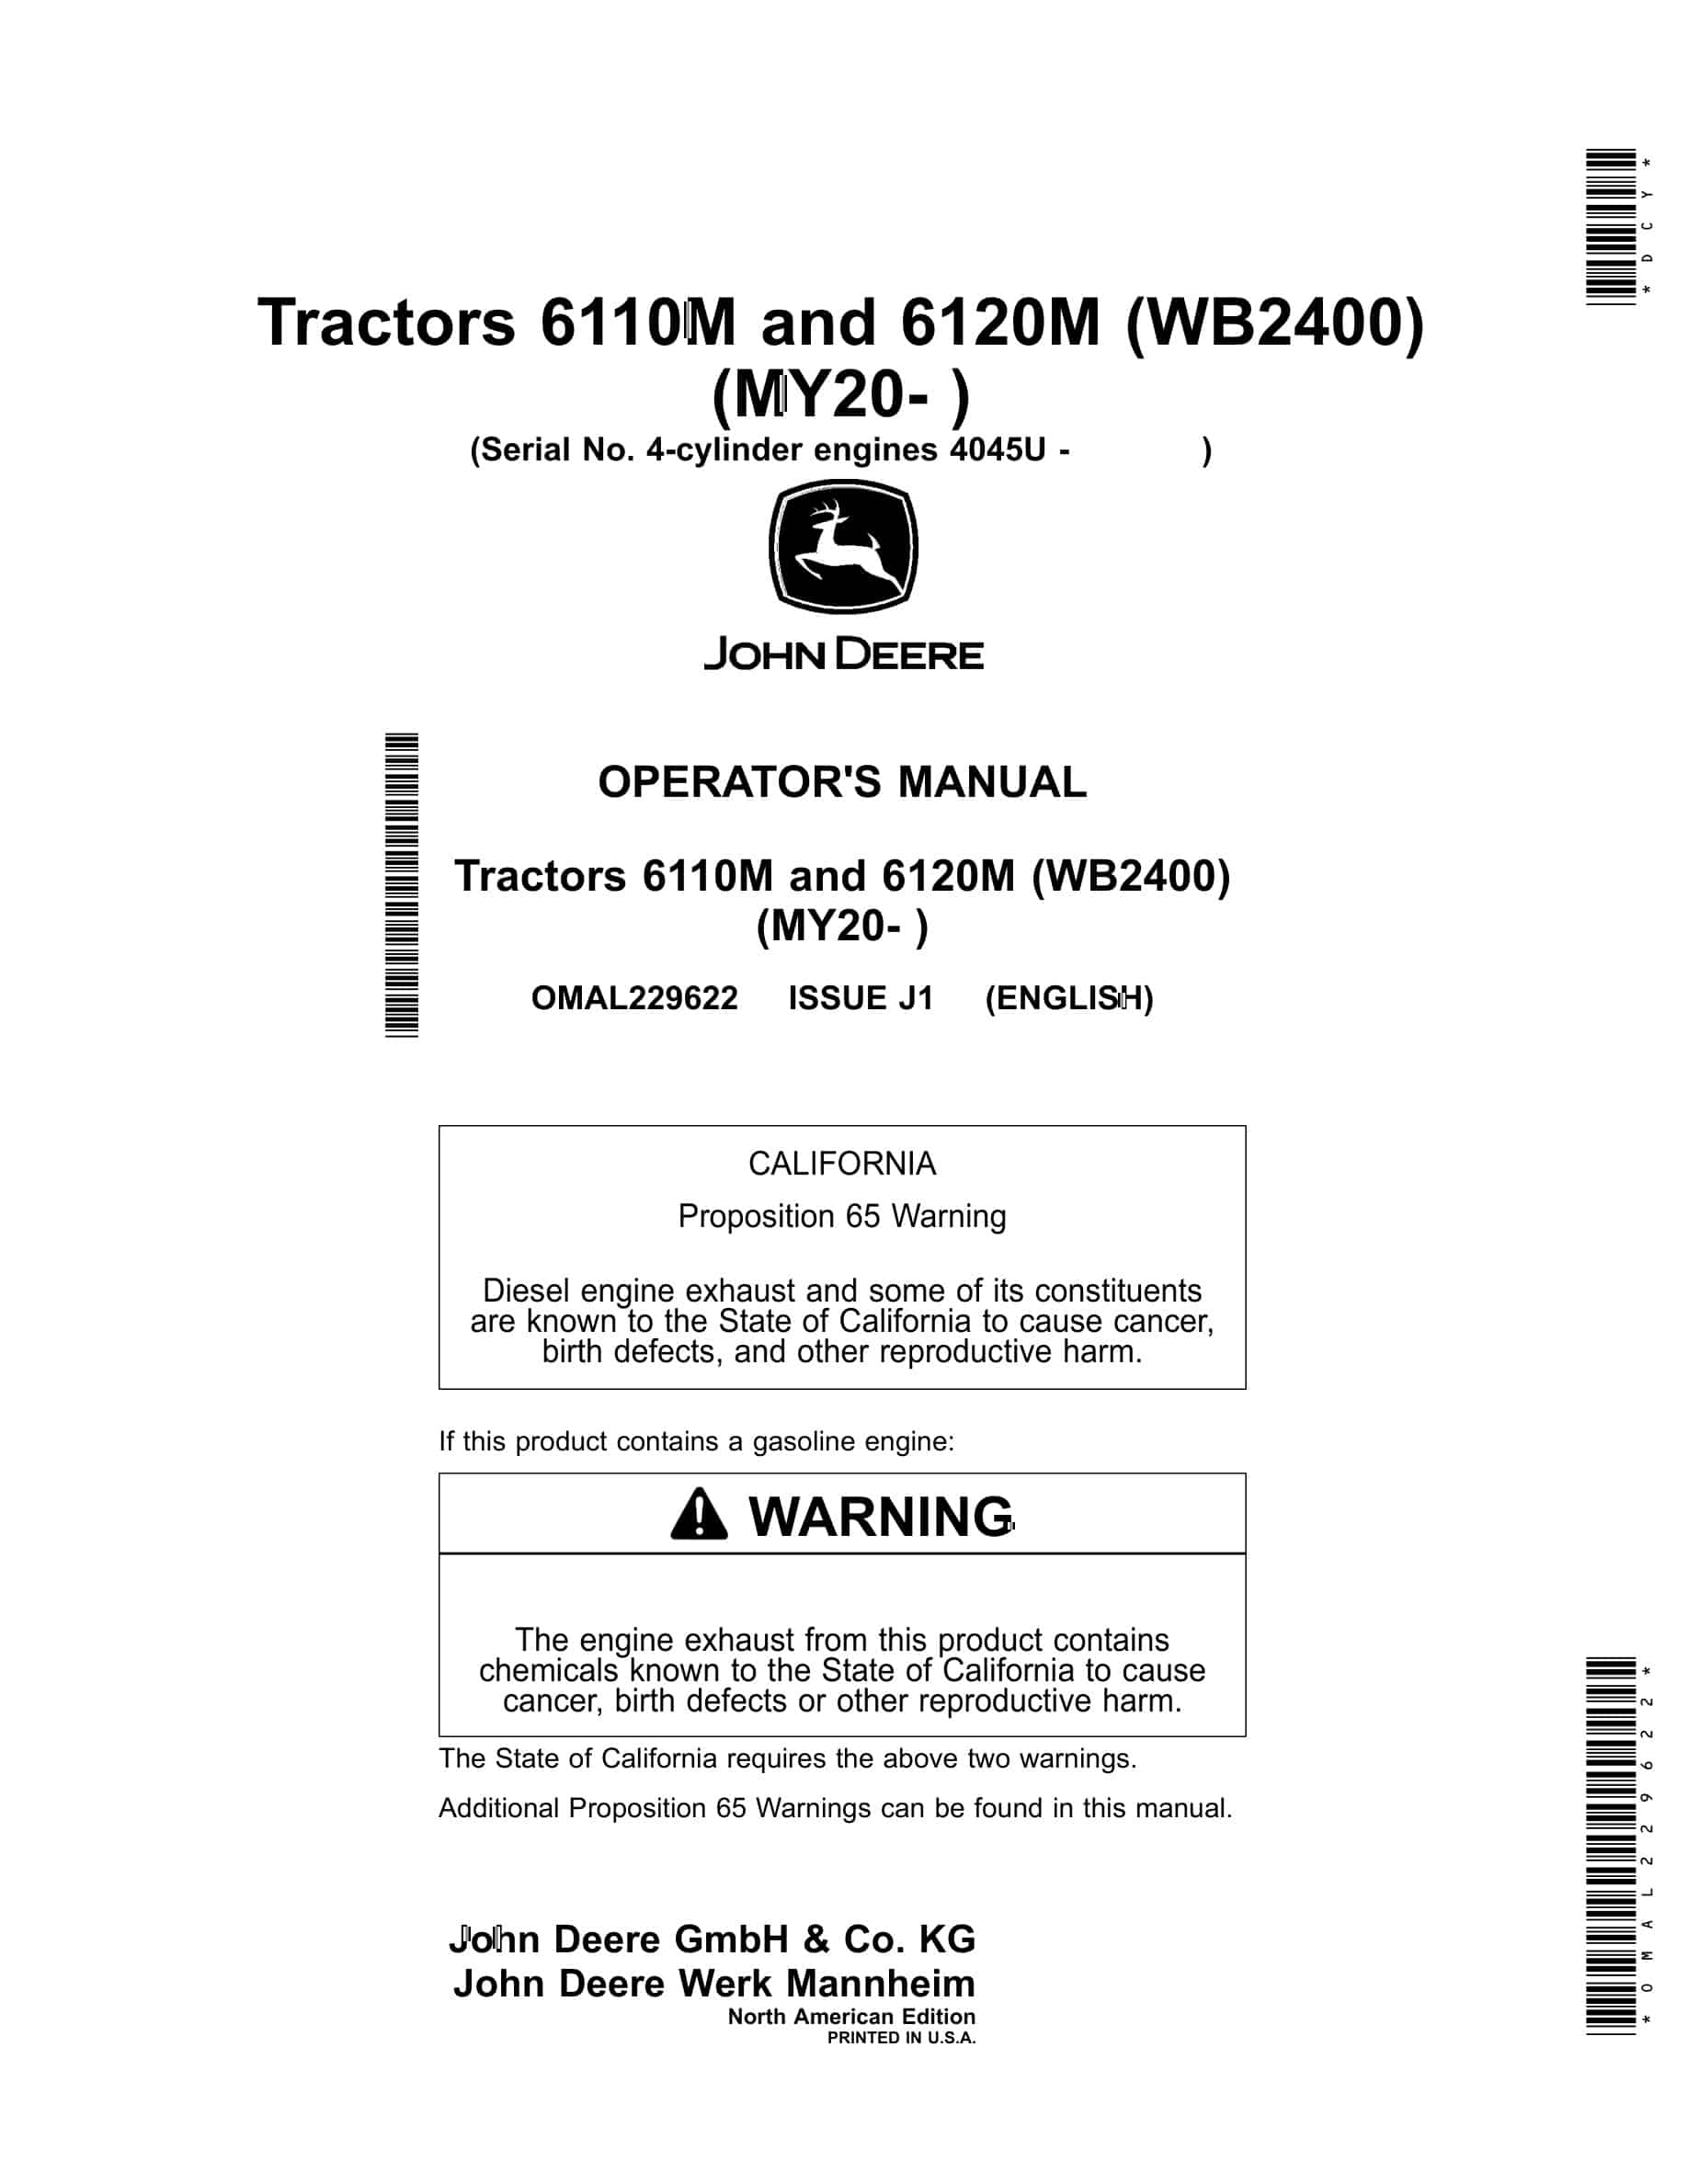 John Deere 6110M and 6120M Tractor Operator Manual OMAL229622-1